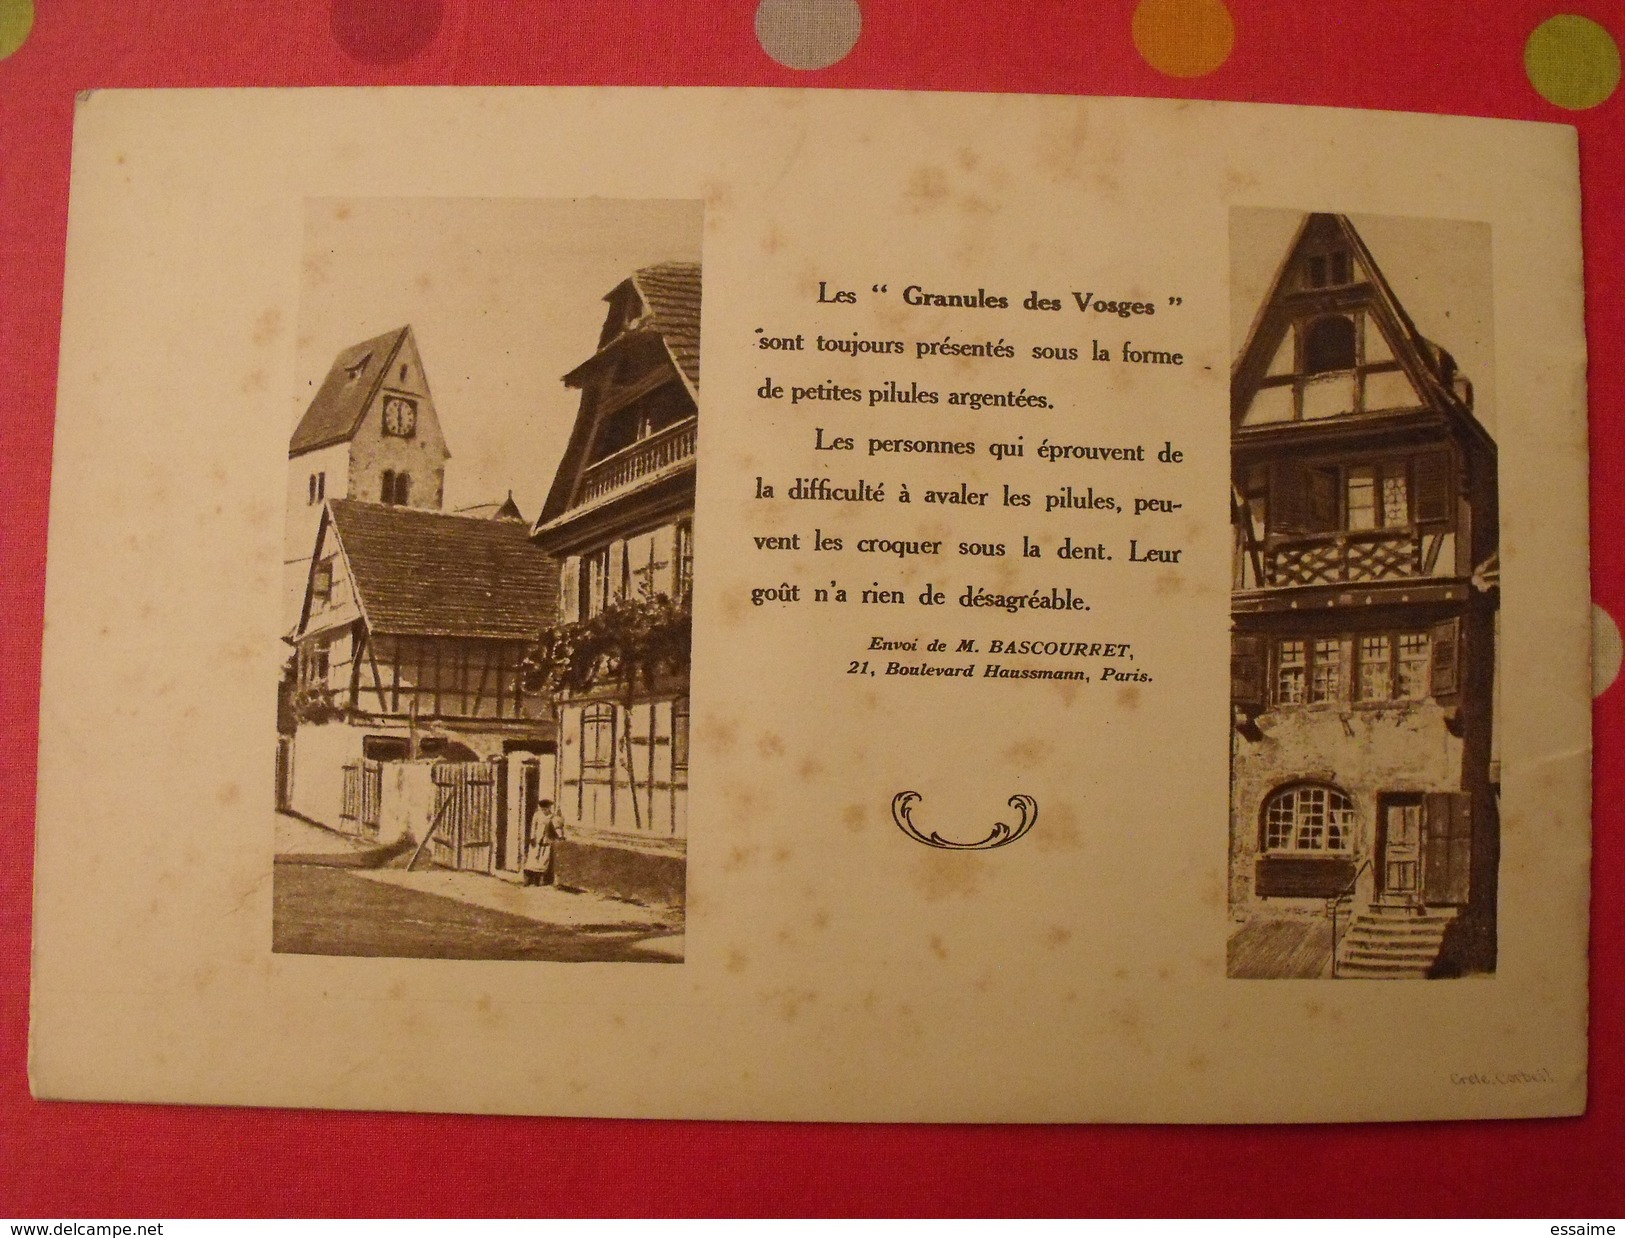 Scènes de la vie dans les Vosges. offert par Granules des Vosges. vers 1930